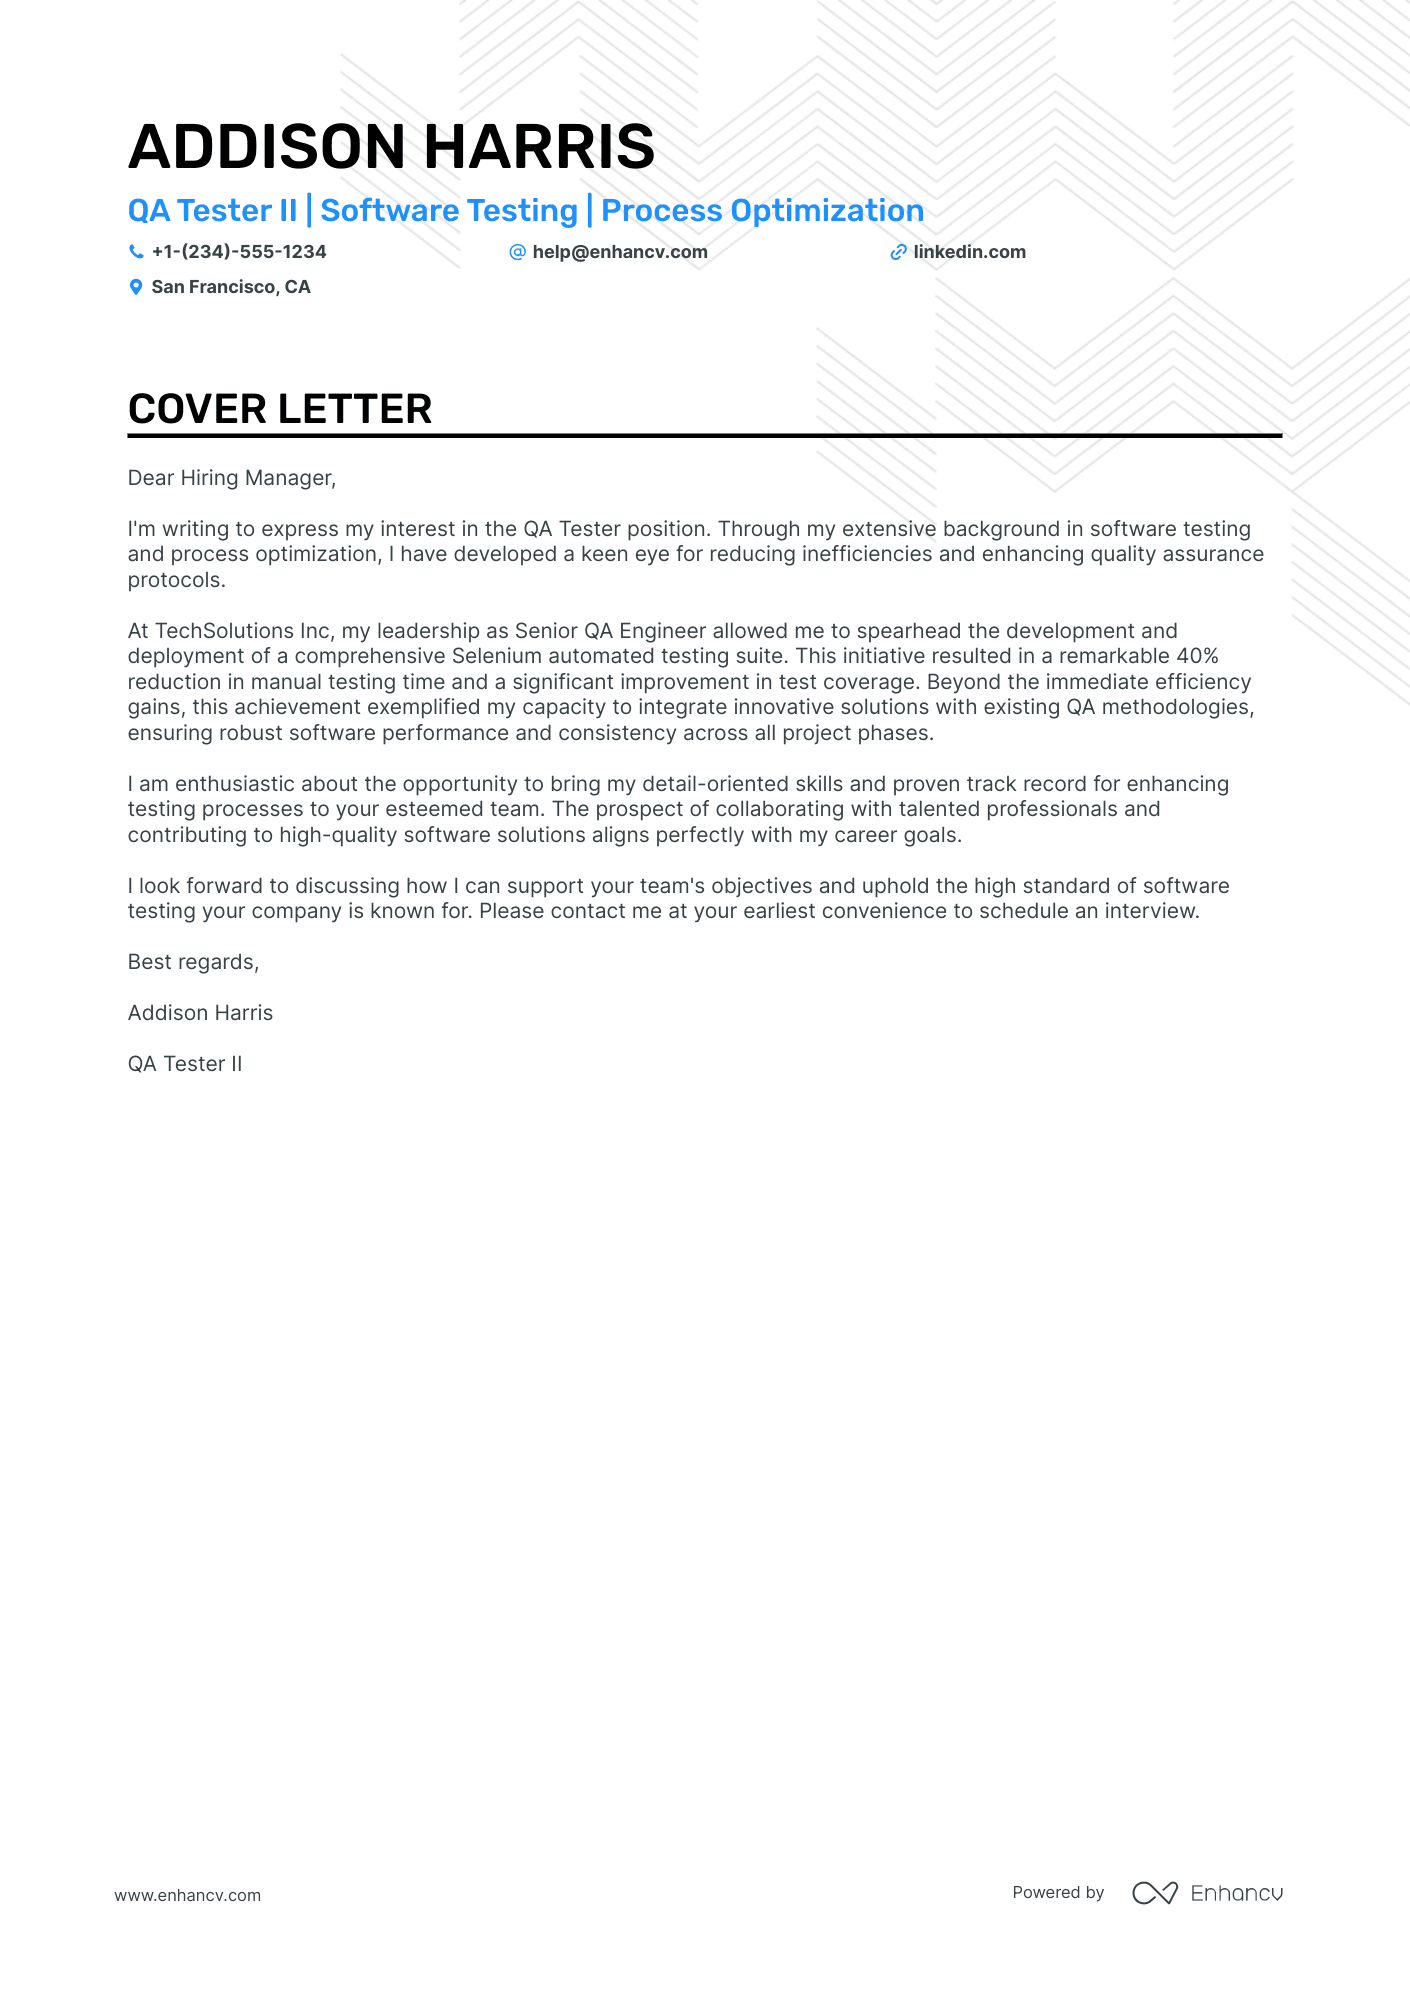 QA Tester cover letter